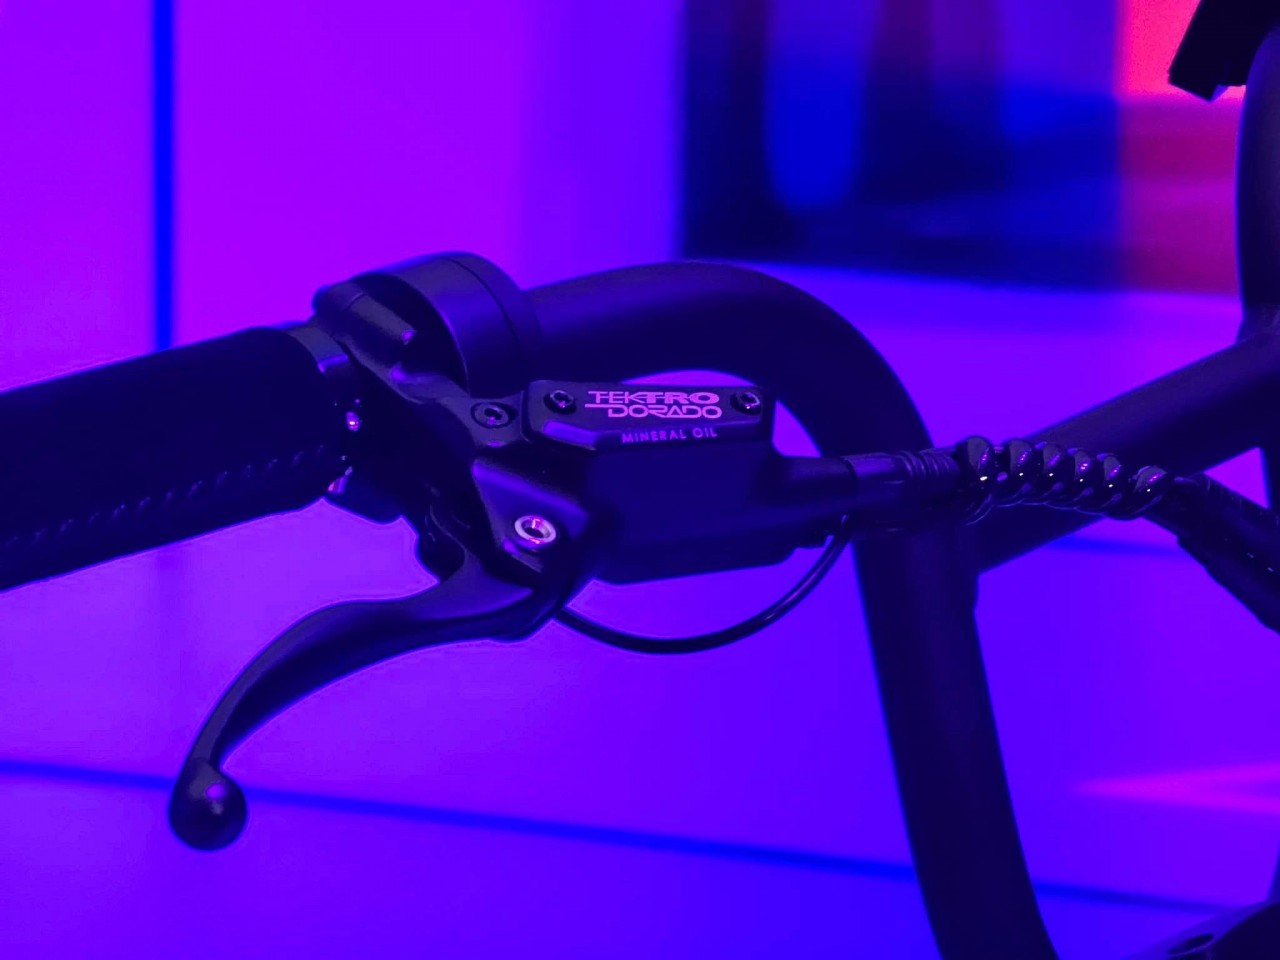 Chiêm ngưỡng xe đạp trợ lực điện VinFast vừa ra mắt với tốc độ 32 km/h, pin có thể tháo rời